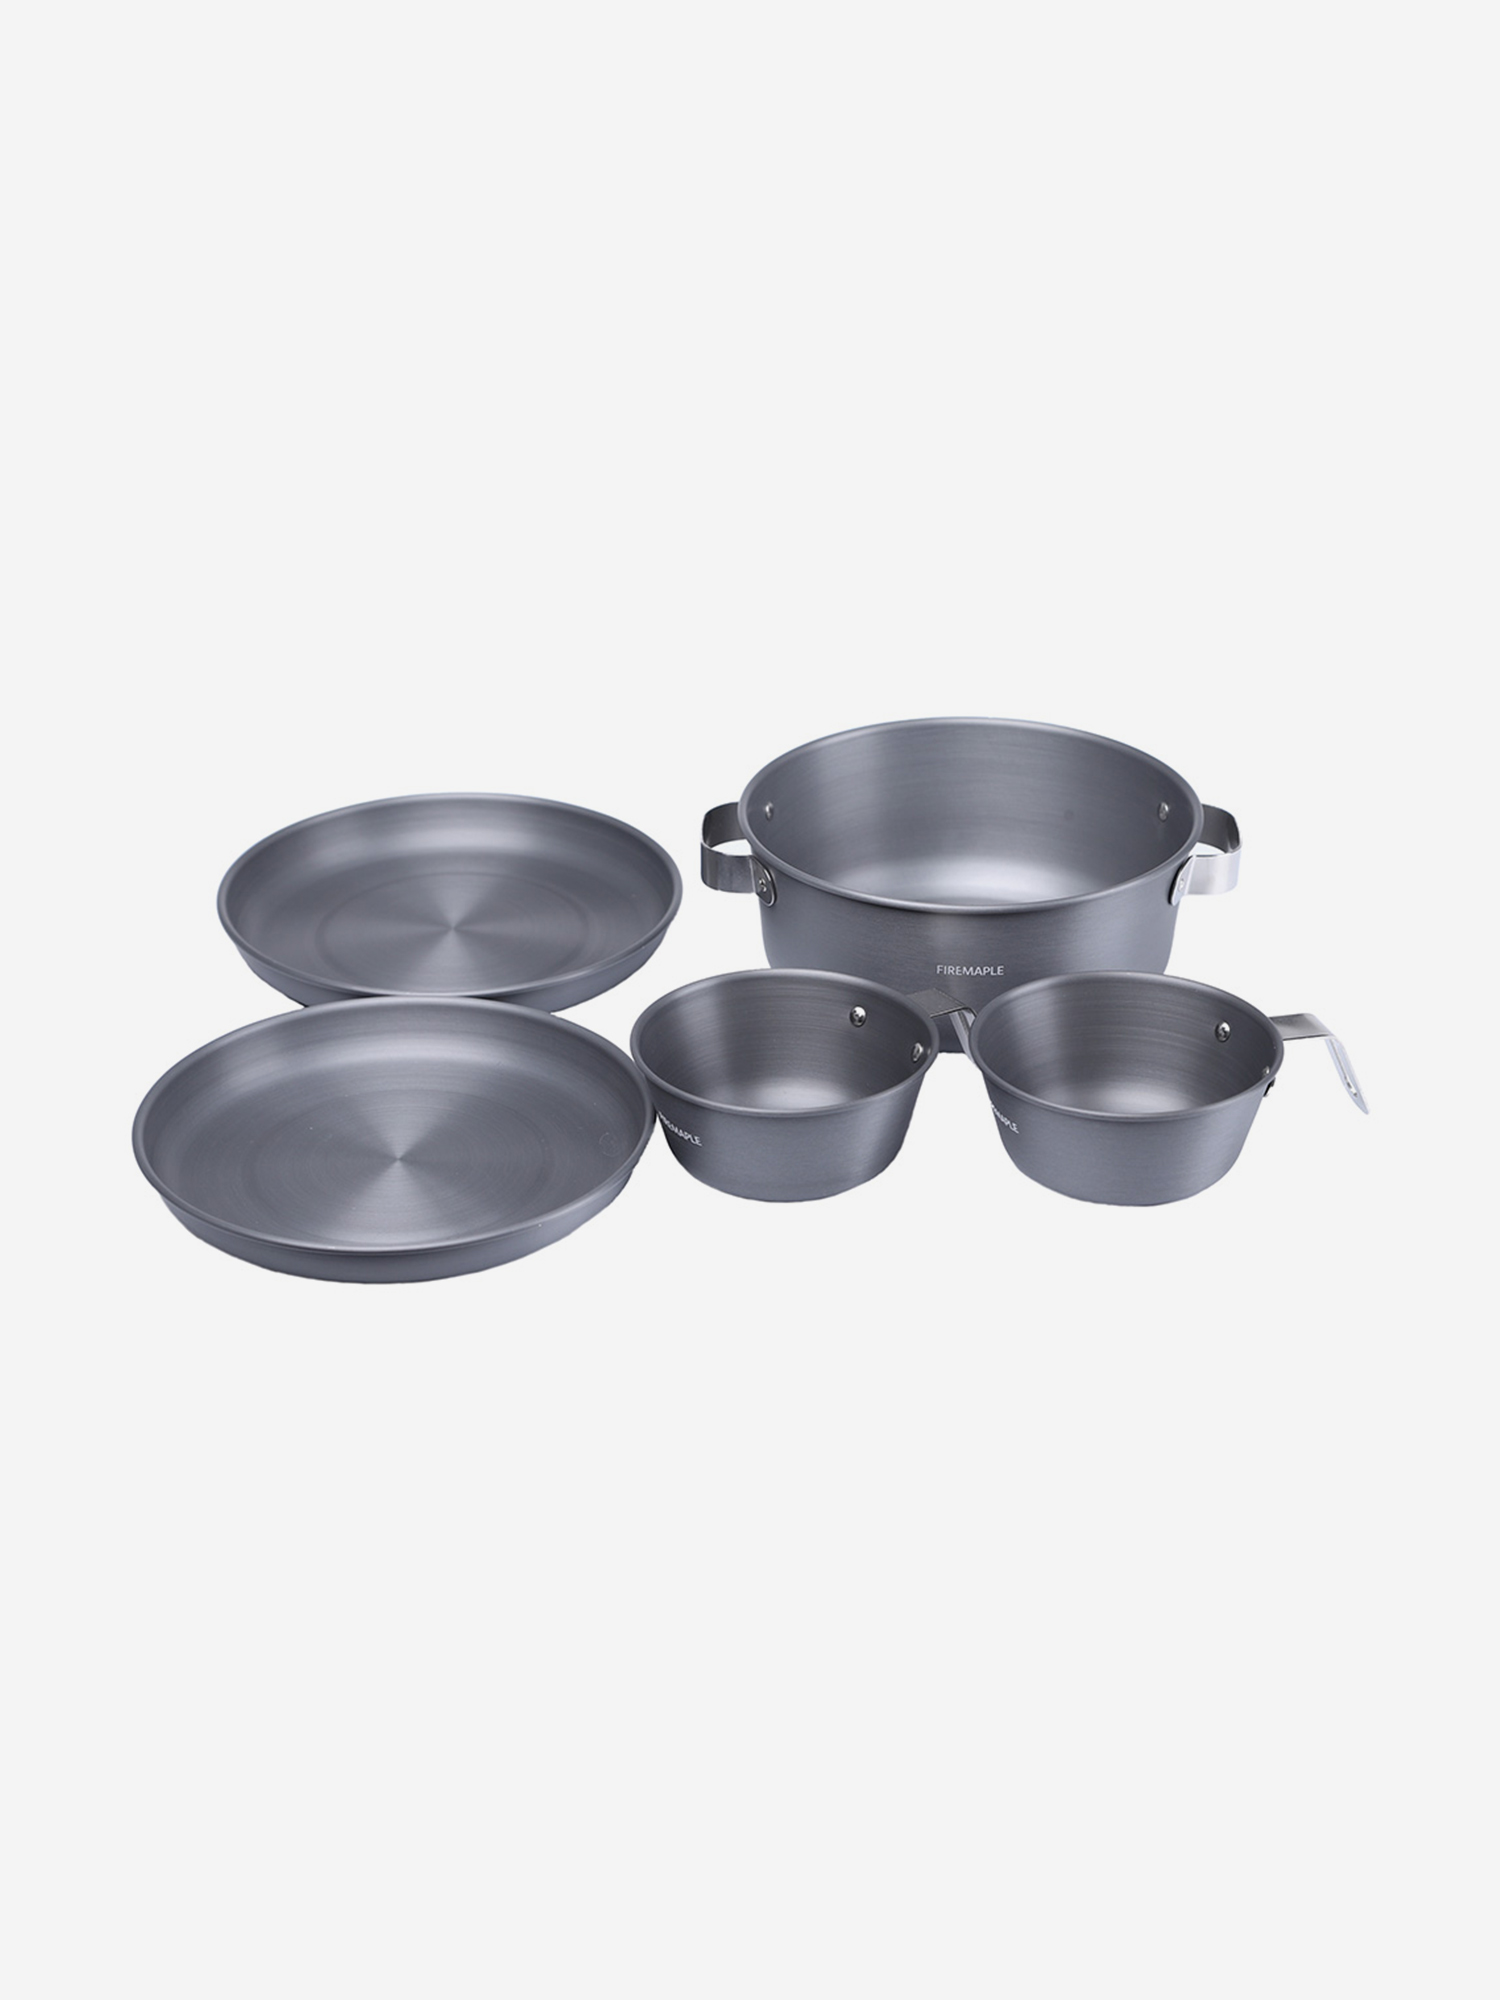 Набор посуды Fire-Maple Gourmet Set, Серый набор посуды 2 котелка 2 сковороды fire maple fmc k7 серый